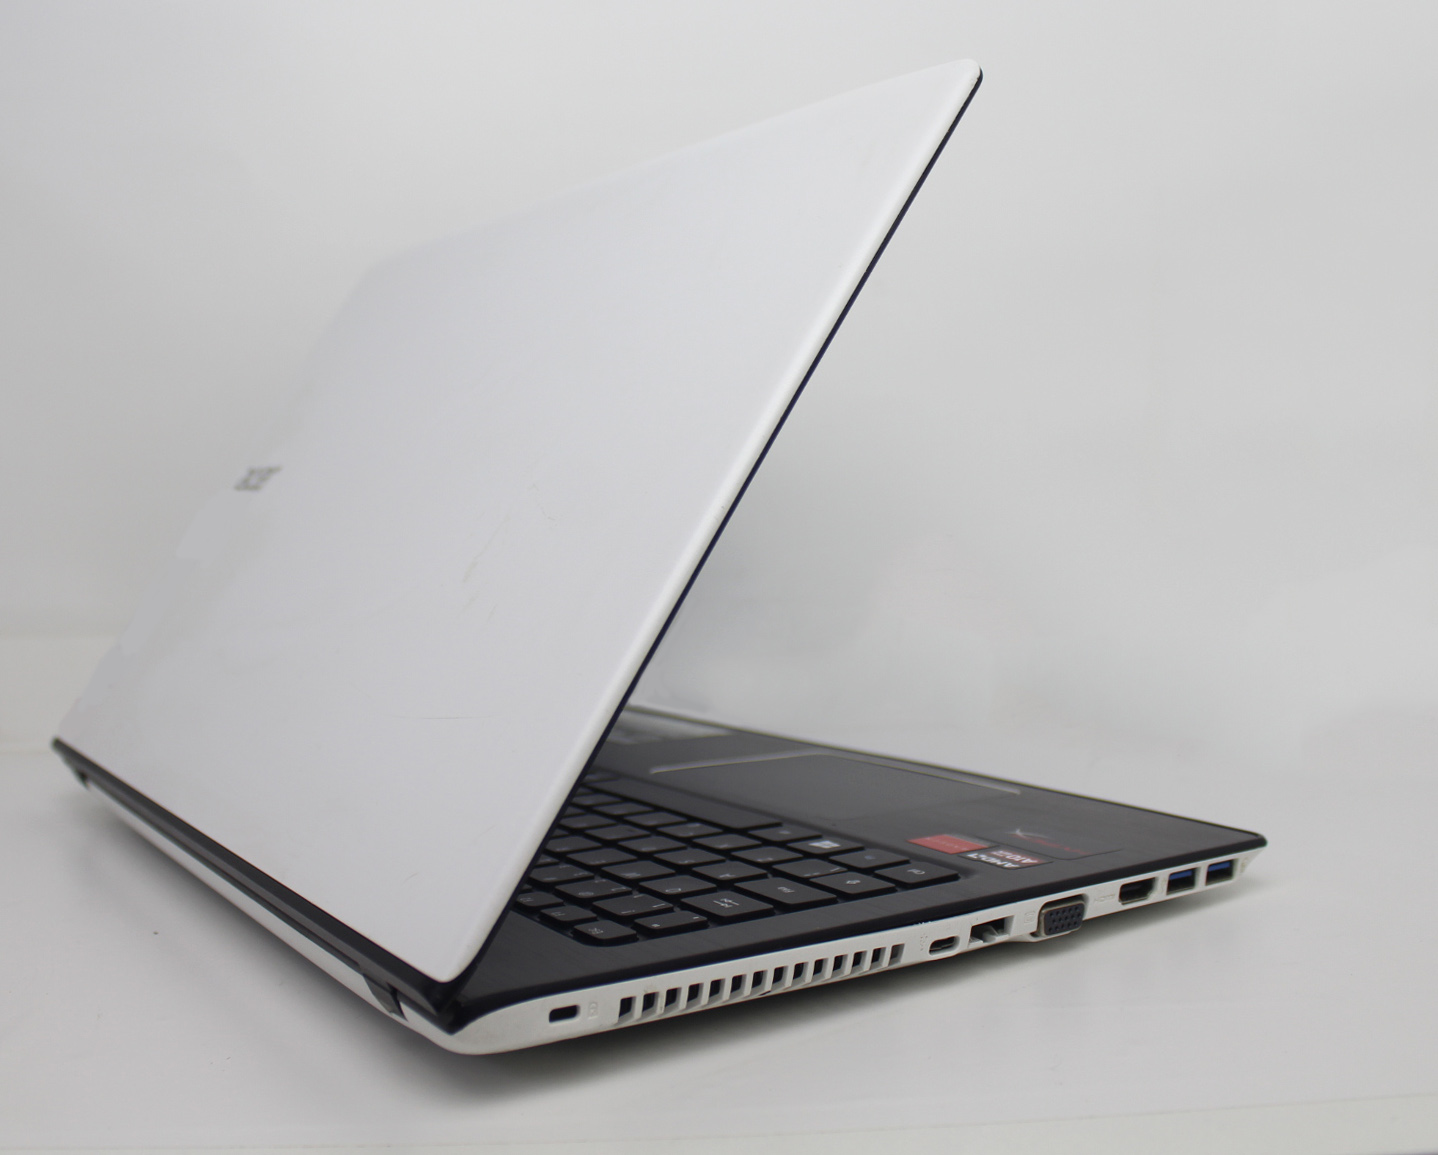 Notebook Acer Apire  E5 15.6'' AMD A10-9600P 2.4GHz 8GB SSD-128GB - 2GB Dedicada + Alphanumérico